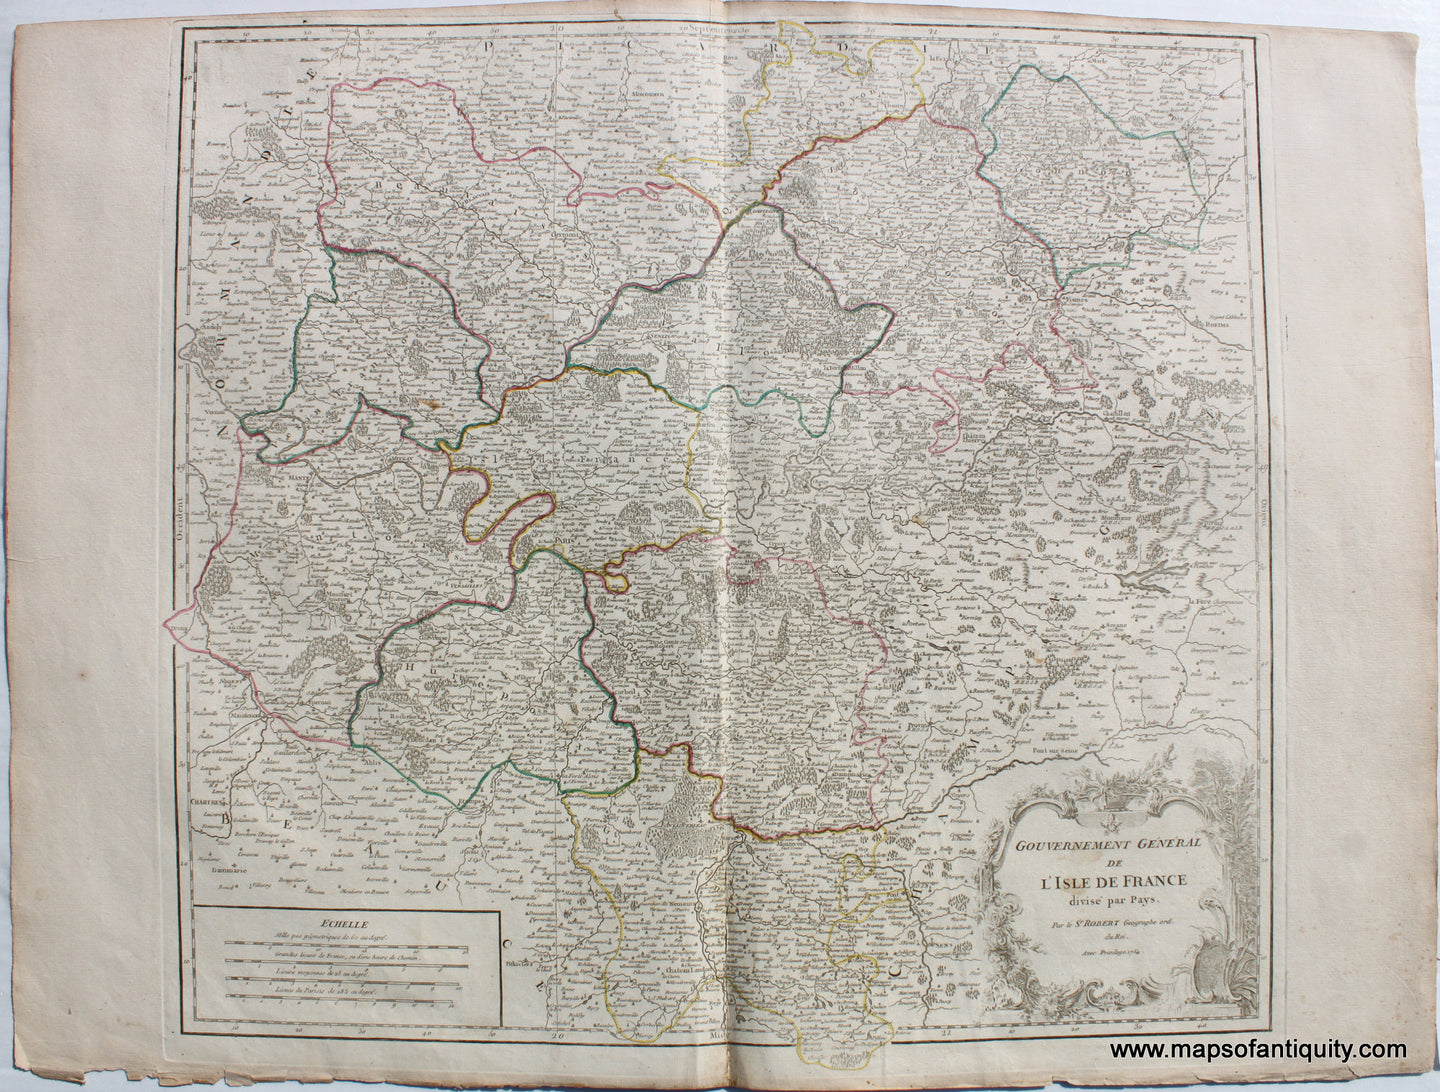 Antique-Map-Gouvernement-General-de-L'Isle-de-France-Divise-par-Pays-Gilles-Robert-de-Vaugondy-French-1754-1750s-1700s-Mid-18th-Century-Maps-of-Antiquity